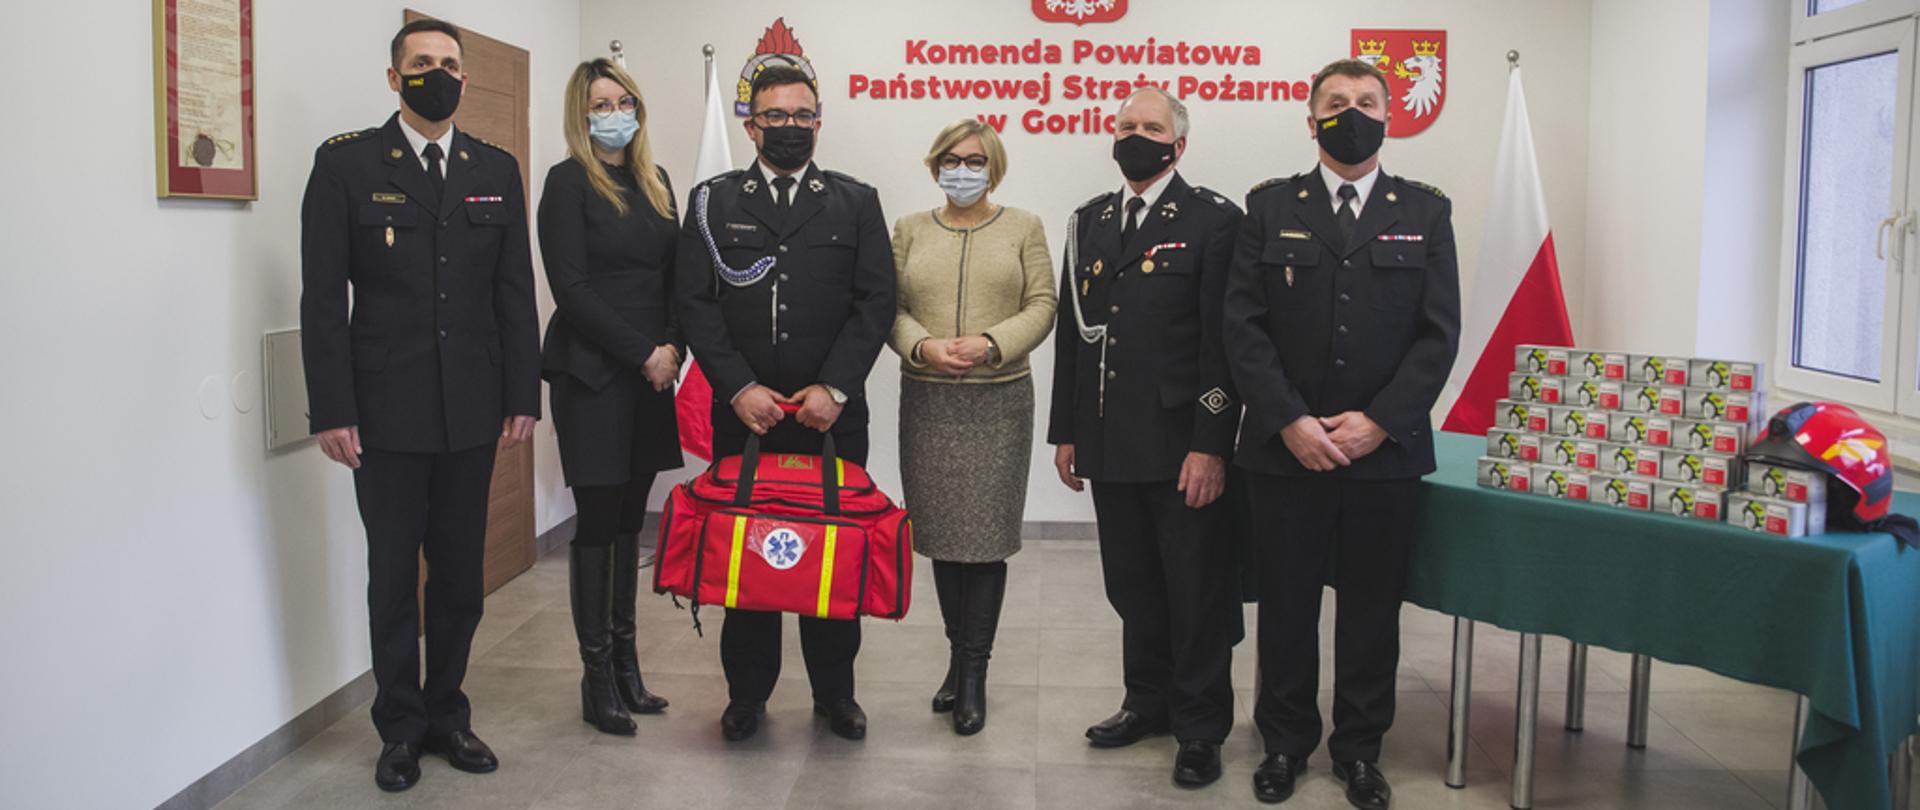 Na zdjęciu strażacy w mundurach wyjściowych, strażacy z Państwowej Straży Pożarnej i z Ochotniczej Straży Pożarnej jeden z nich trzyma torbę R1 do ratownictwa medycznego pomiędzy strażakami stoją w ubraniach cywilnych Pani Poseł i Z-ca Kierownika KRUS.